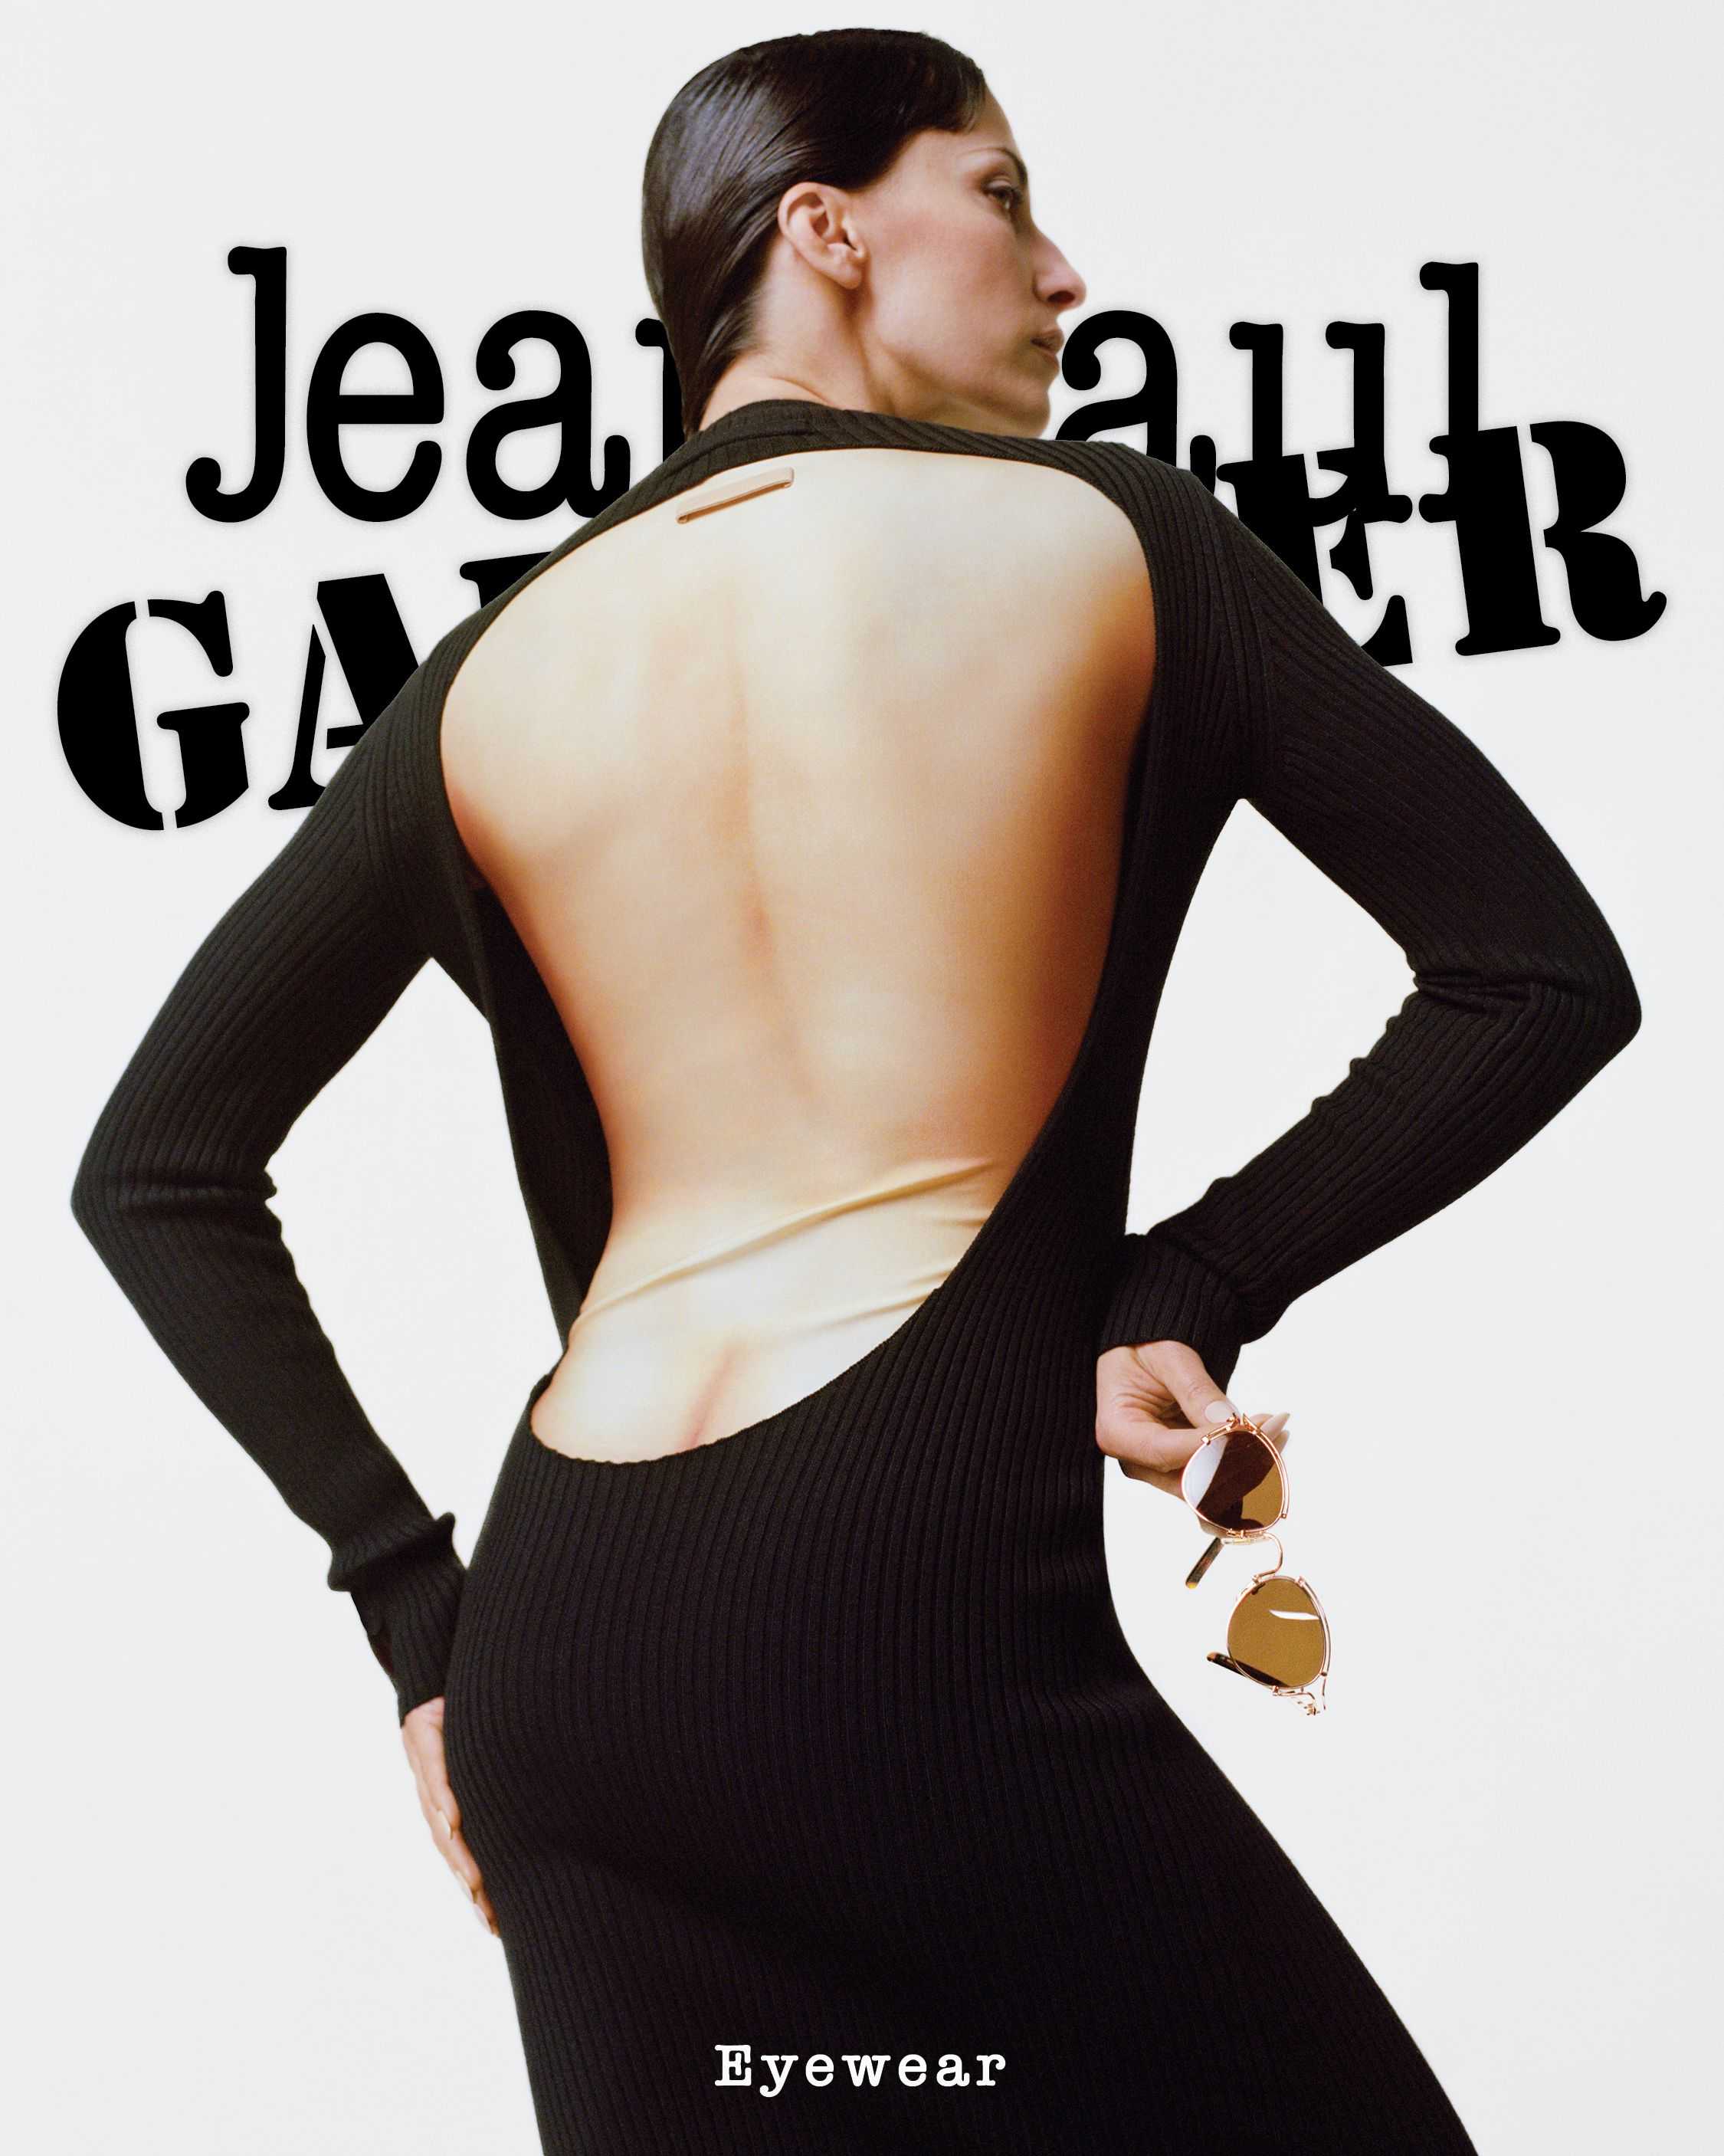 Jean Paul Gautier - Nicolas Coulom - 7103